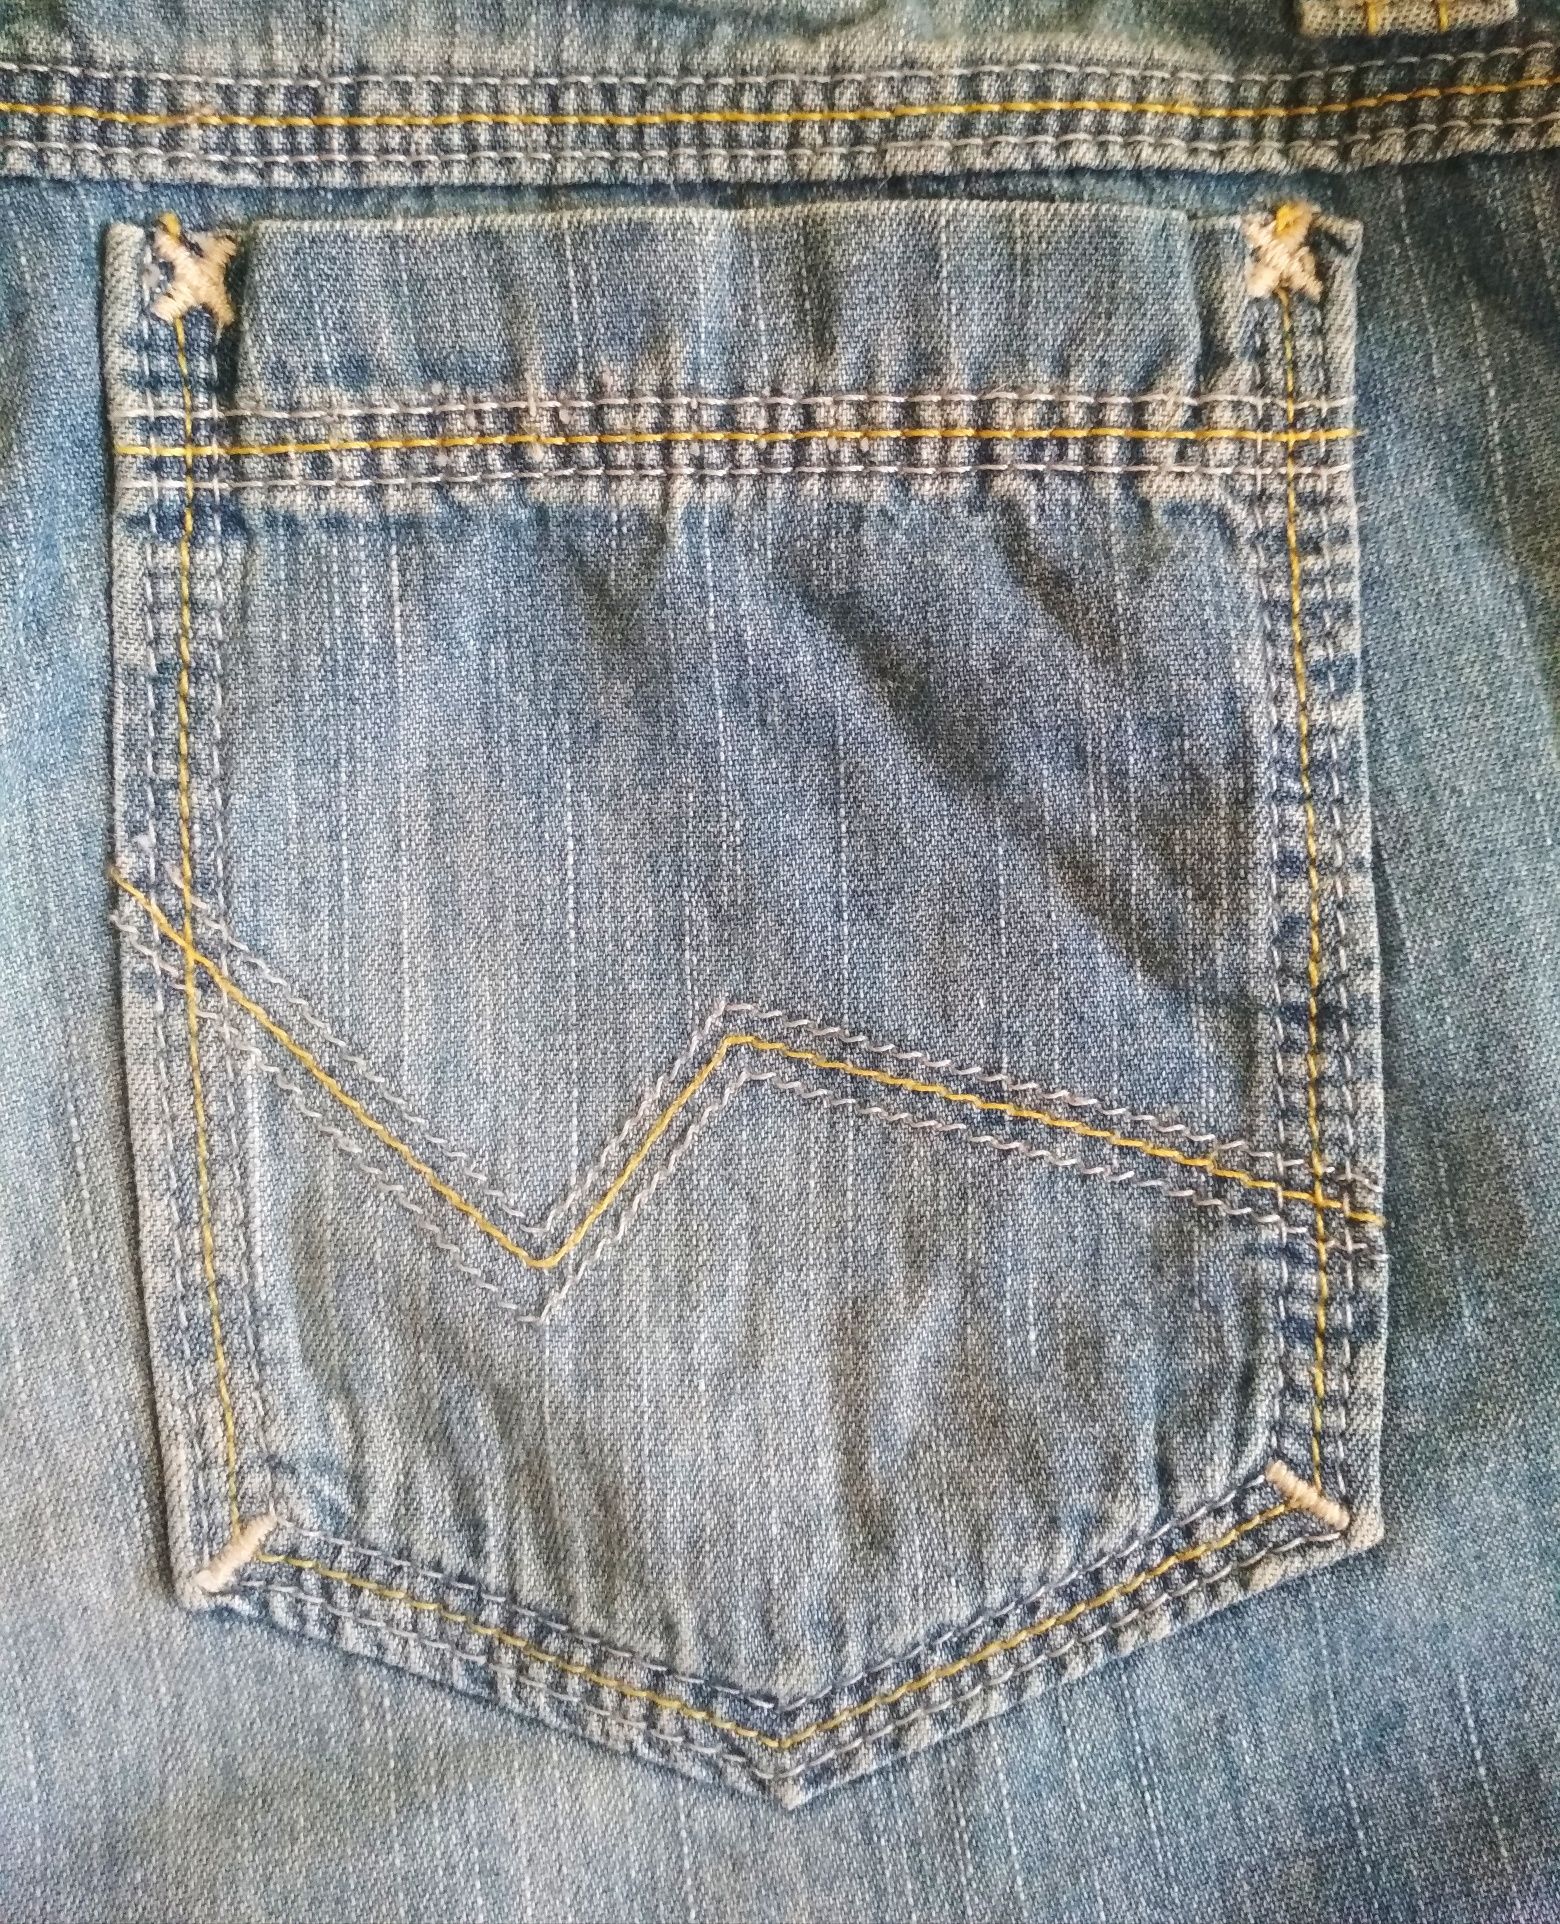 Krótkie spodenki, chłopiec, cienki jeans, 8lat, 128cm, Debenhams.